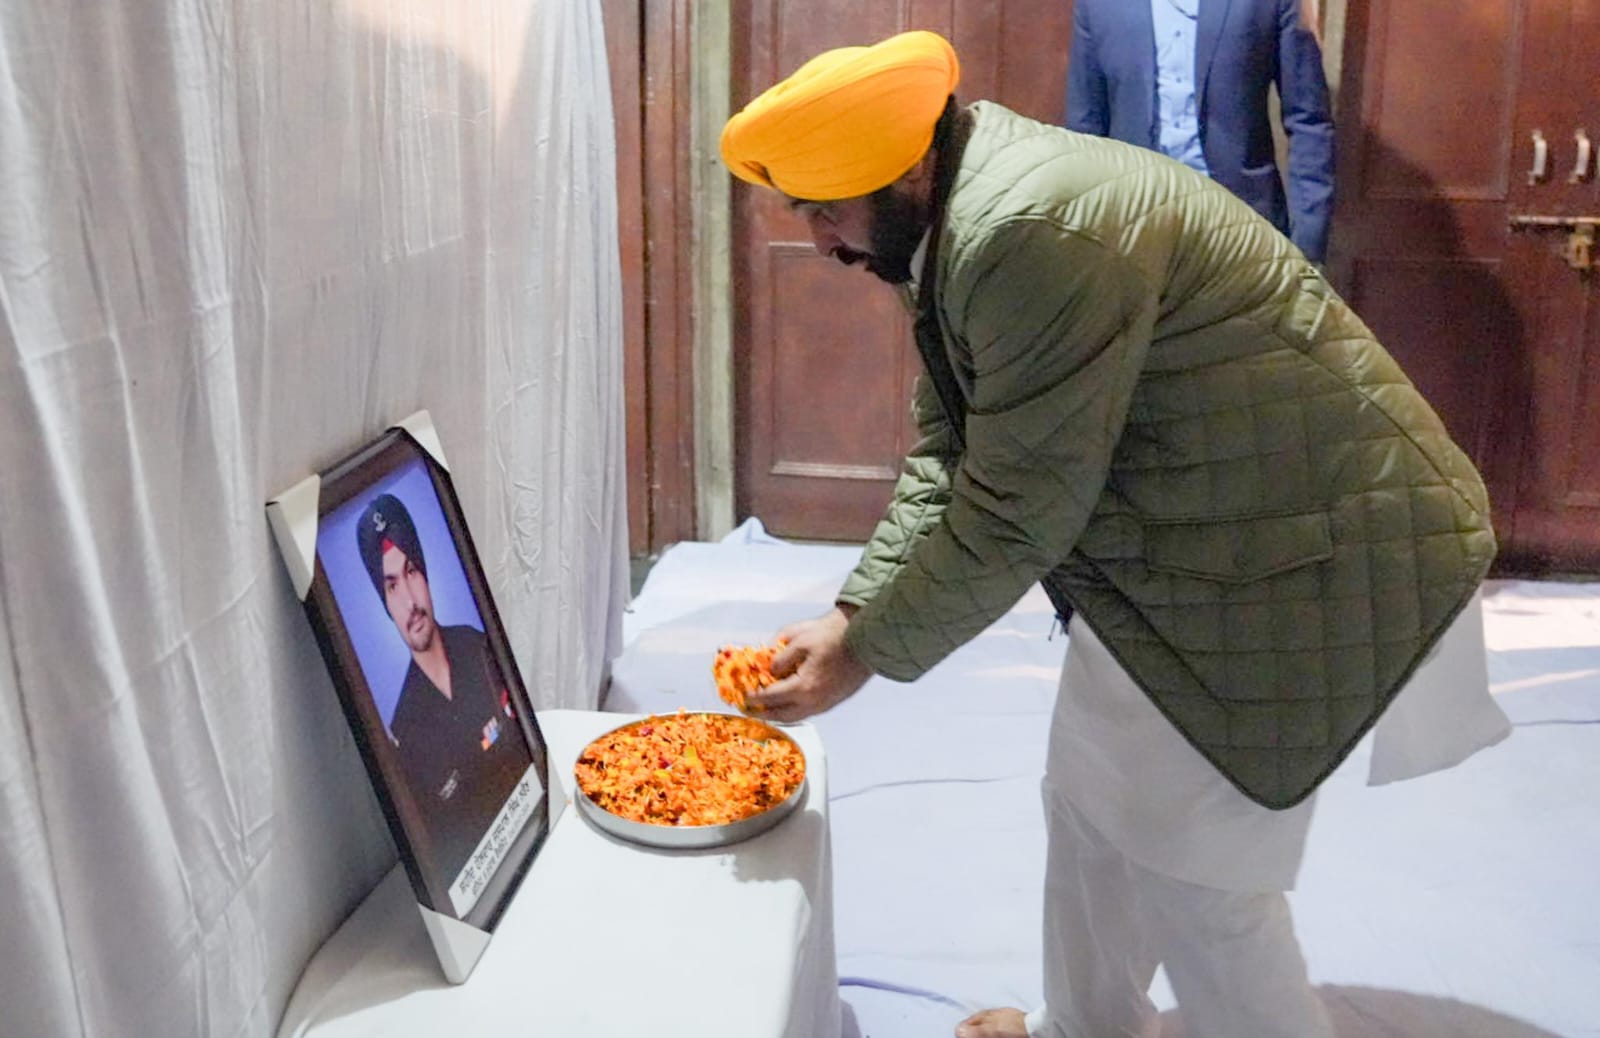 मुख्यमंत्री ने शहीद जसपाल सिंह के परिवार को एक करोड़ रुपए की वित्तीय सहायता का चैक सौंपा